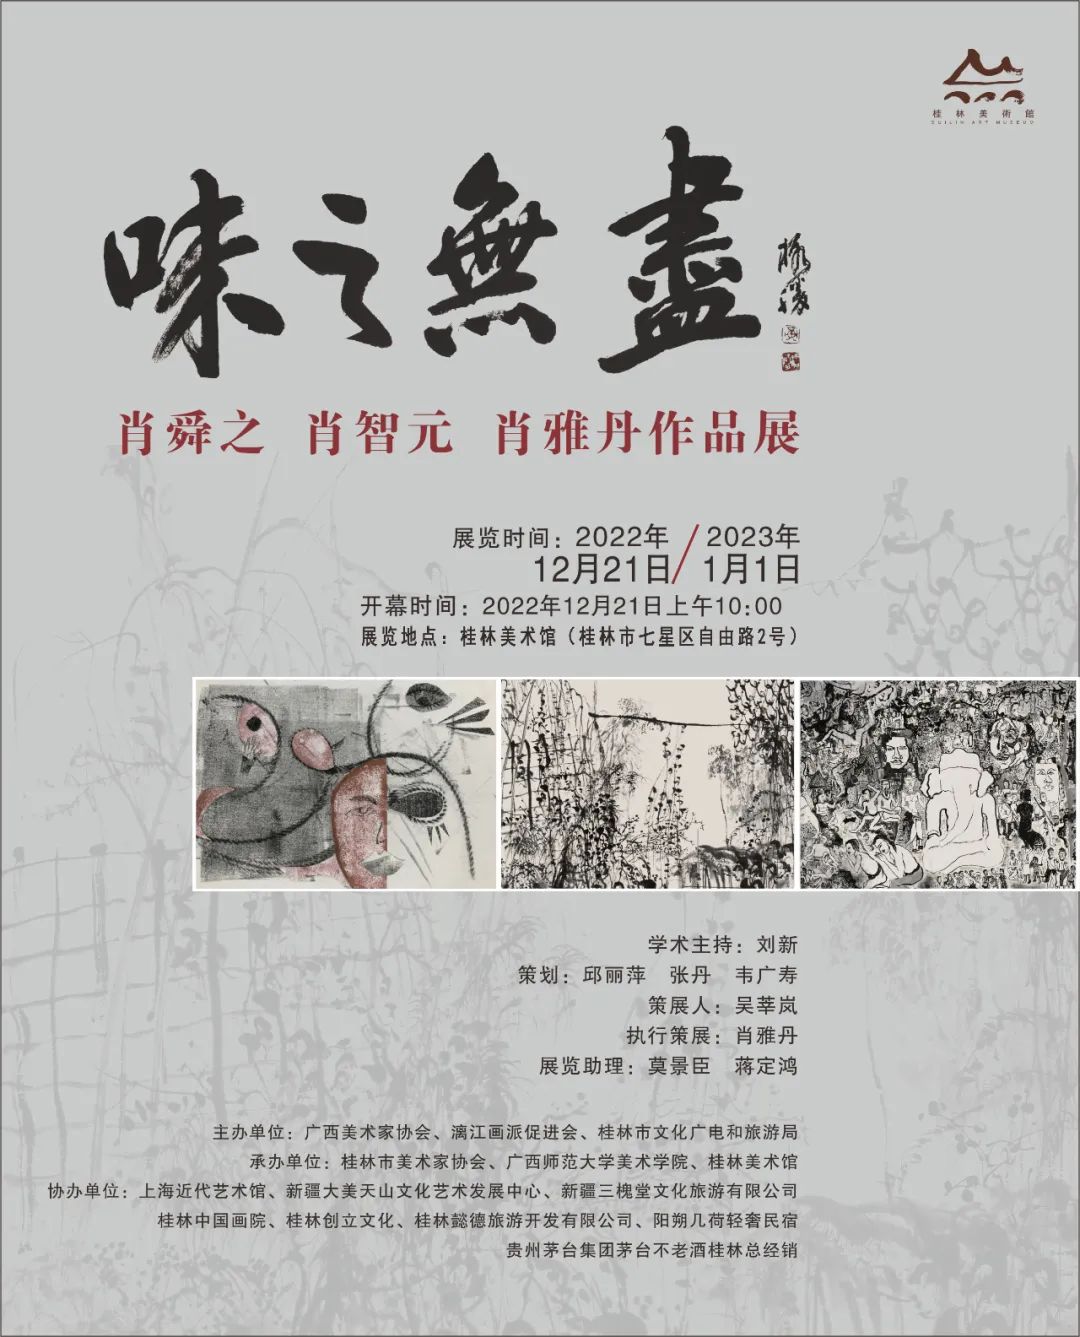 青年画家肖智元应邀参展，“味之无尽——肖舜之 肖智元 肖雅丹作品展”将在桂林开展